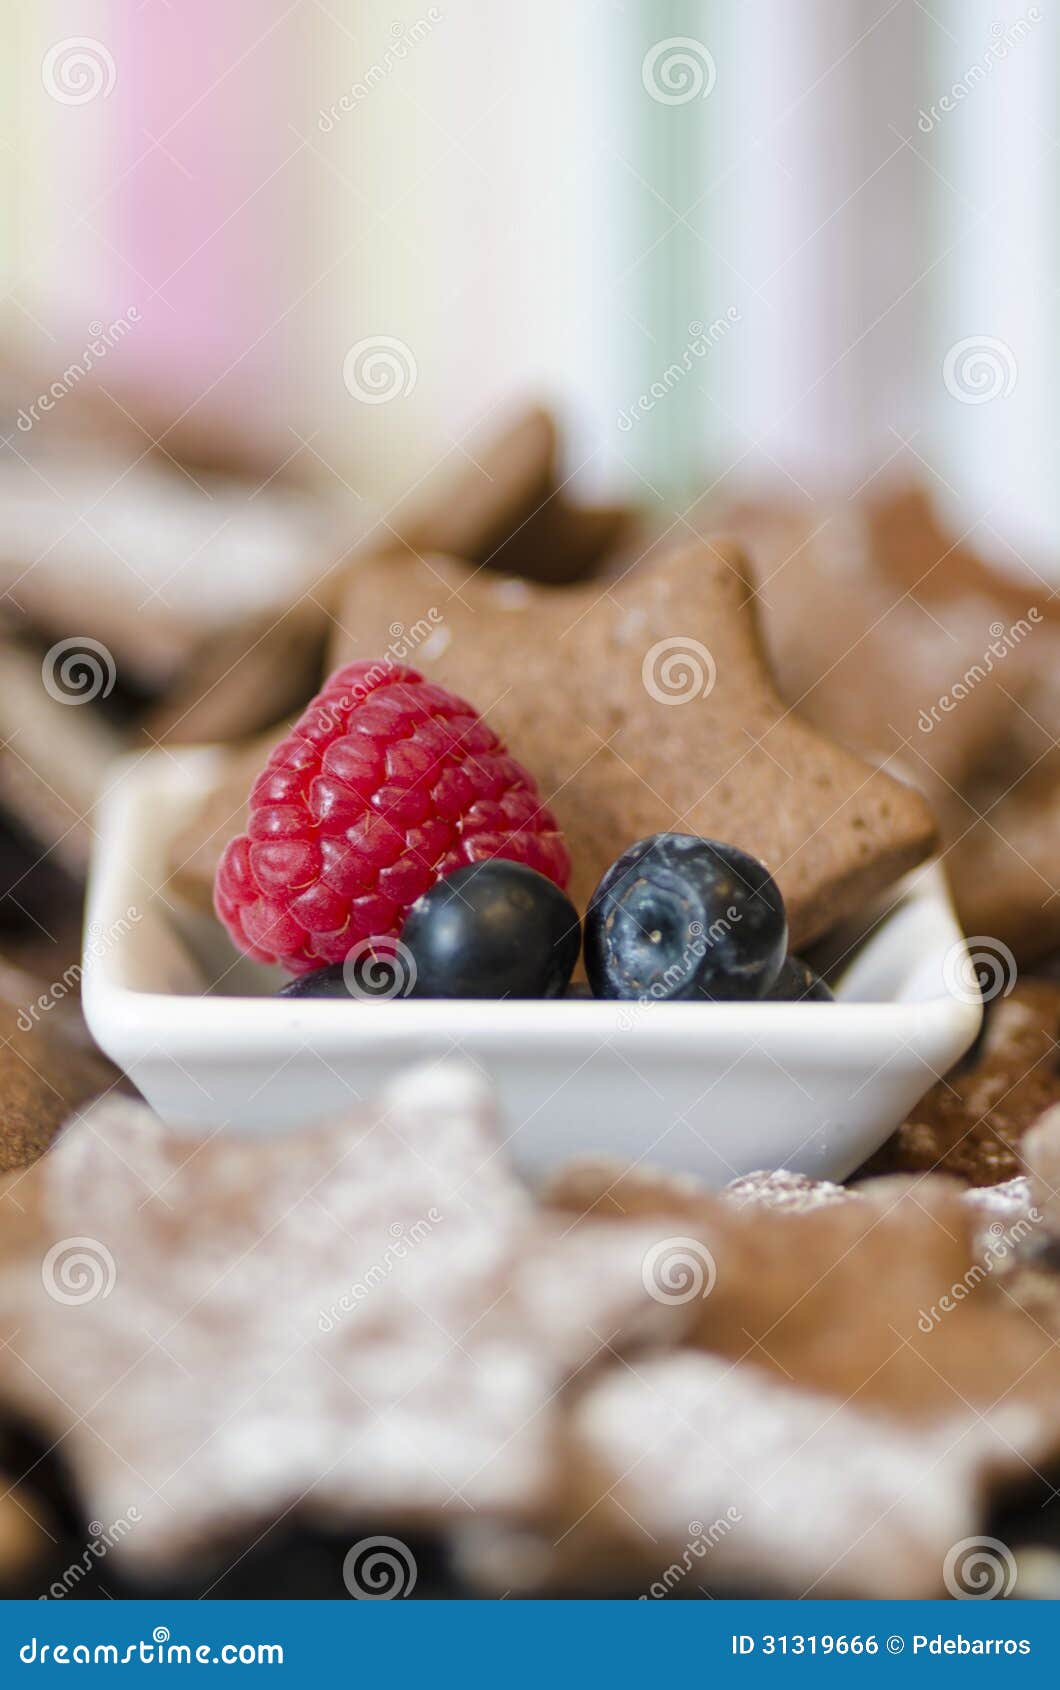 碗用新鲜的莓和蓝莓. 滚保龄球用新鲜的莓蓝莓和一个鲜美新近地被烘烤的星曲奇饼在季节性传统的圣诞节